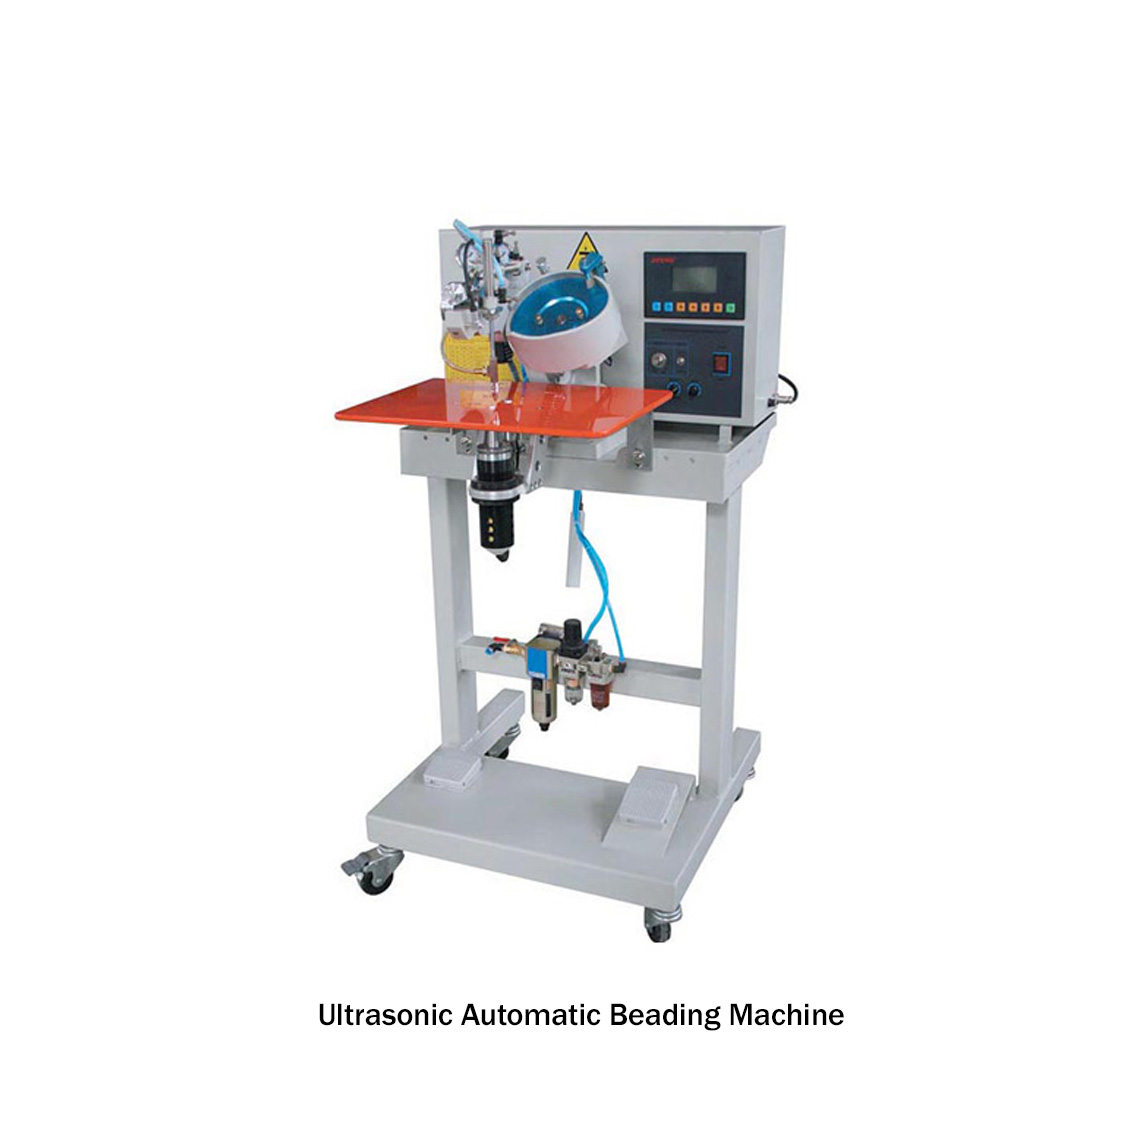 Ultrasonic Automatic Beading Machine